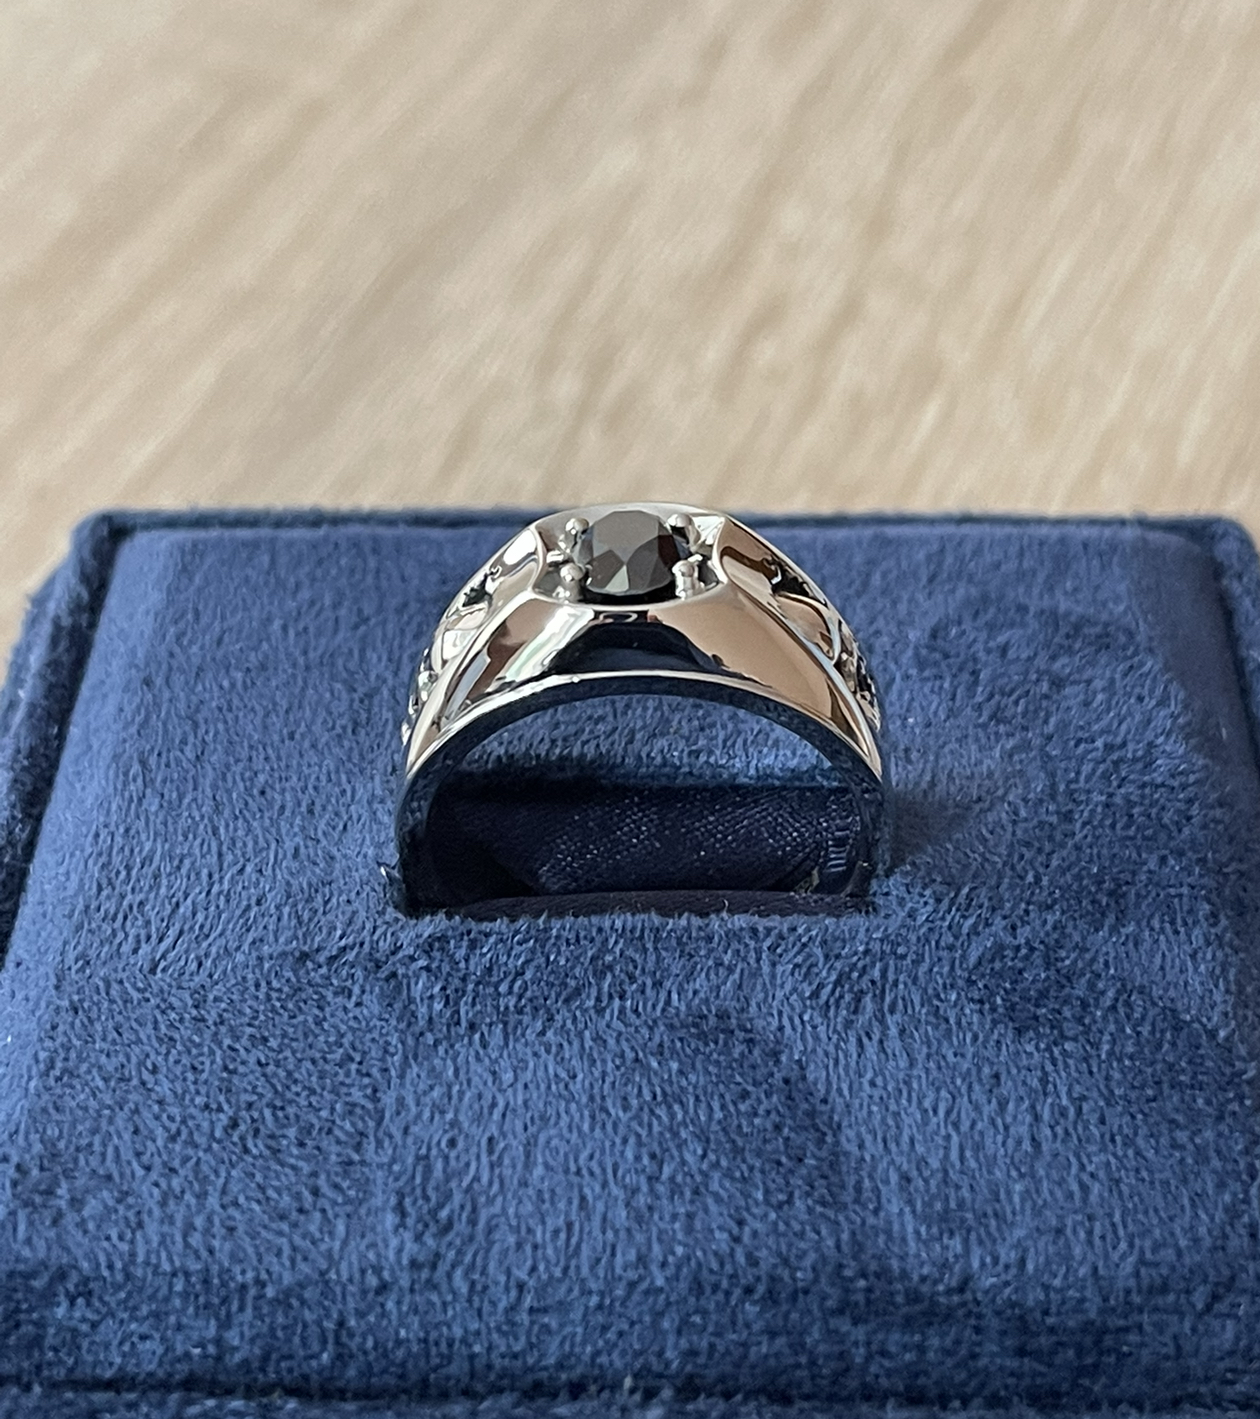 Мужское кольцо с чёрным бриллиантом(0,80 ct.) из серебра 925 пробы